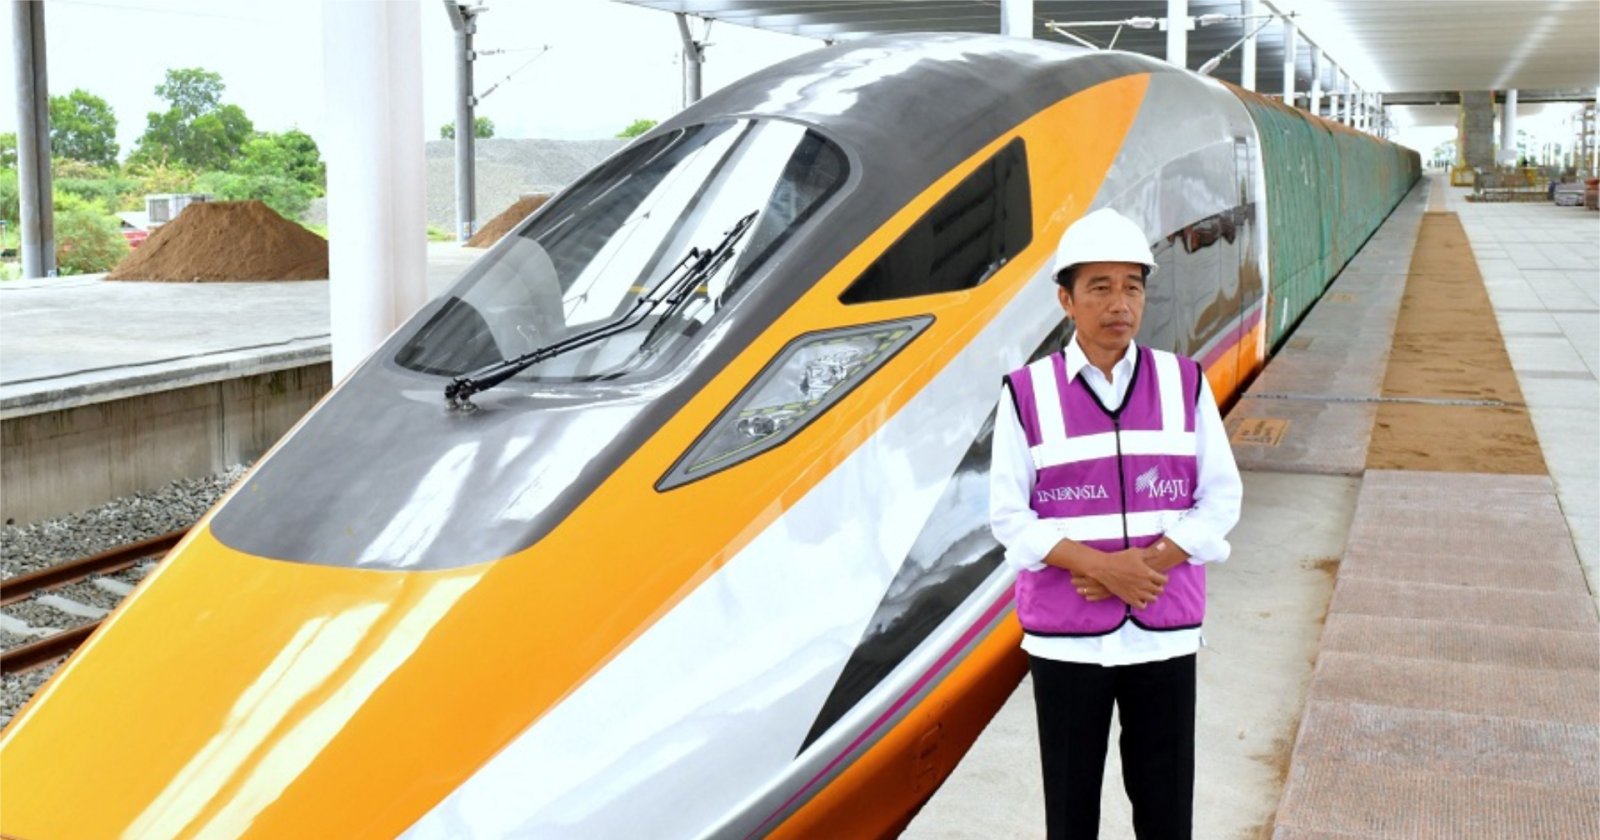 อินโดนีเซียเลื่อนทดลองใช้รถไฟความเร็วสูง มุ่งทดสอบความปลอดภัยตามมาตรฐาน